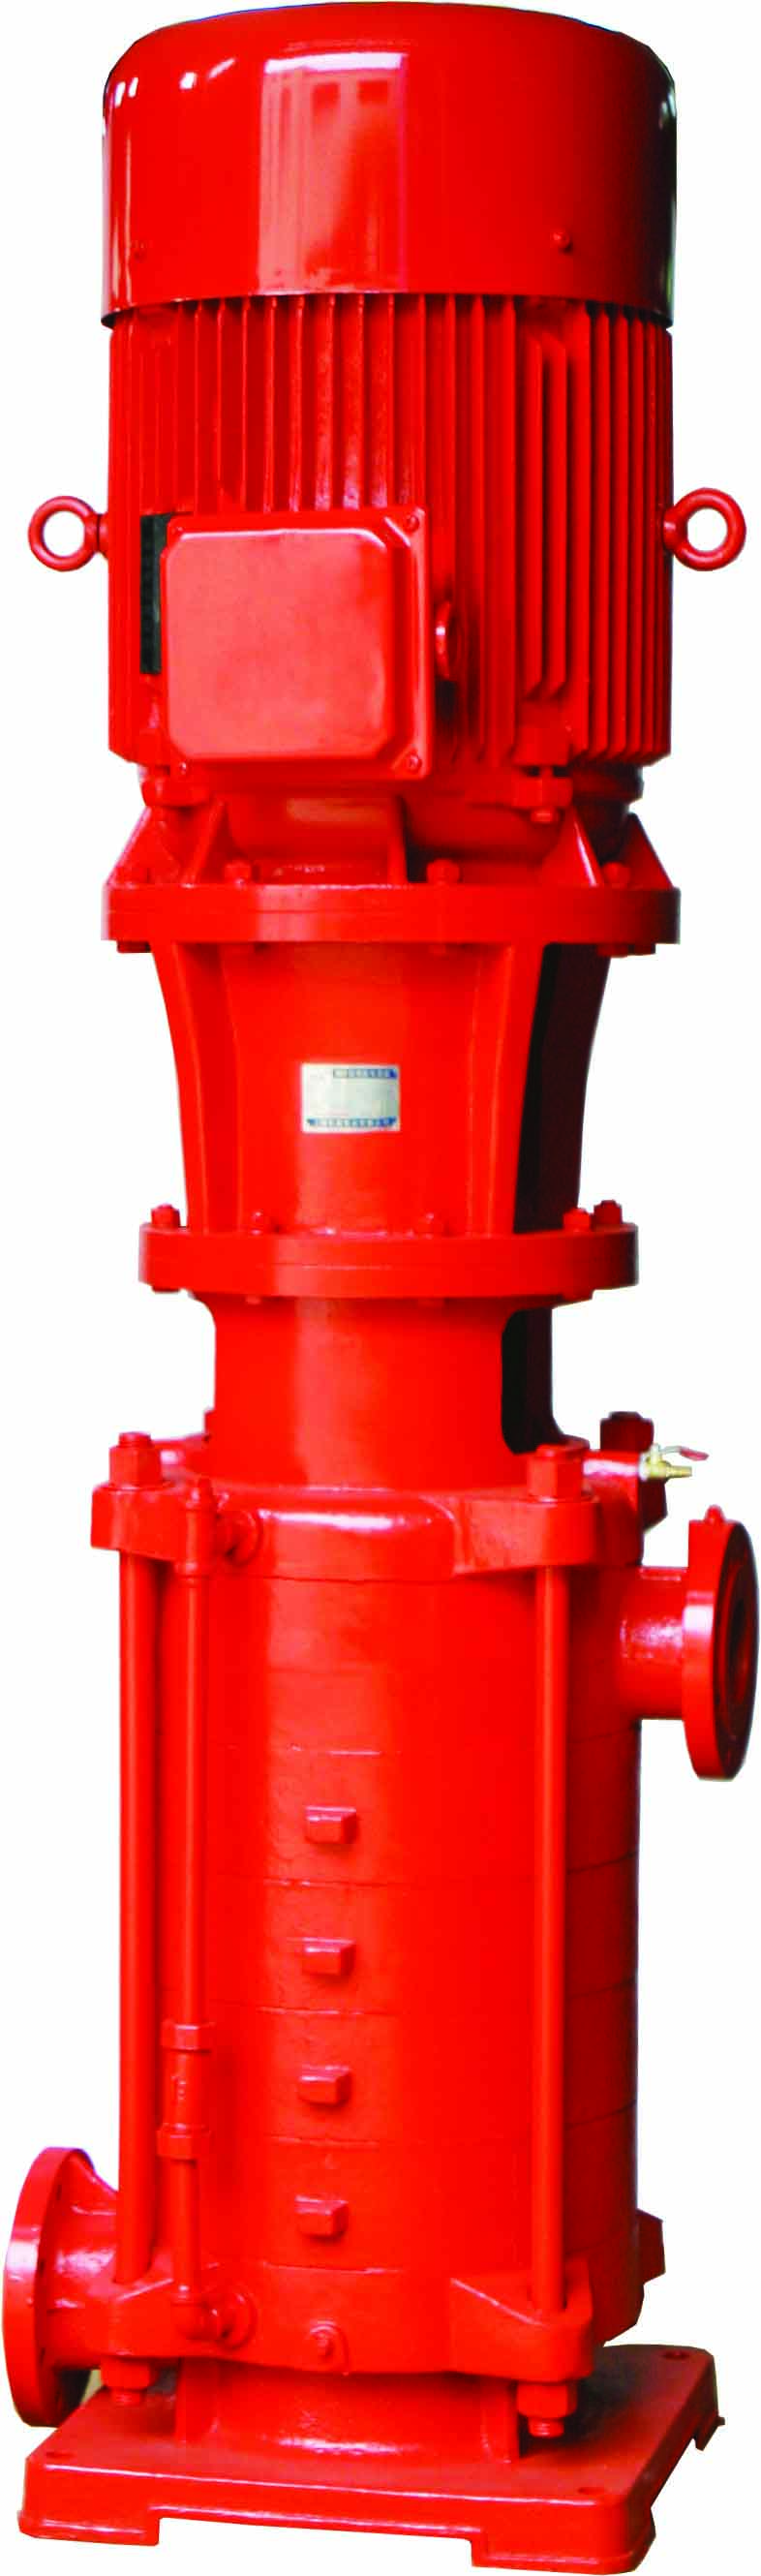 Pompe à incendie centrifuge multicellulaire à aspiration unique verticale XBD-DL dans les systèmes de lutte contre l'incendie